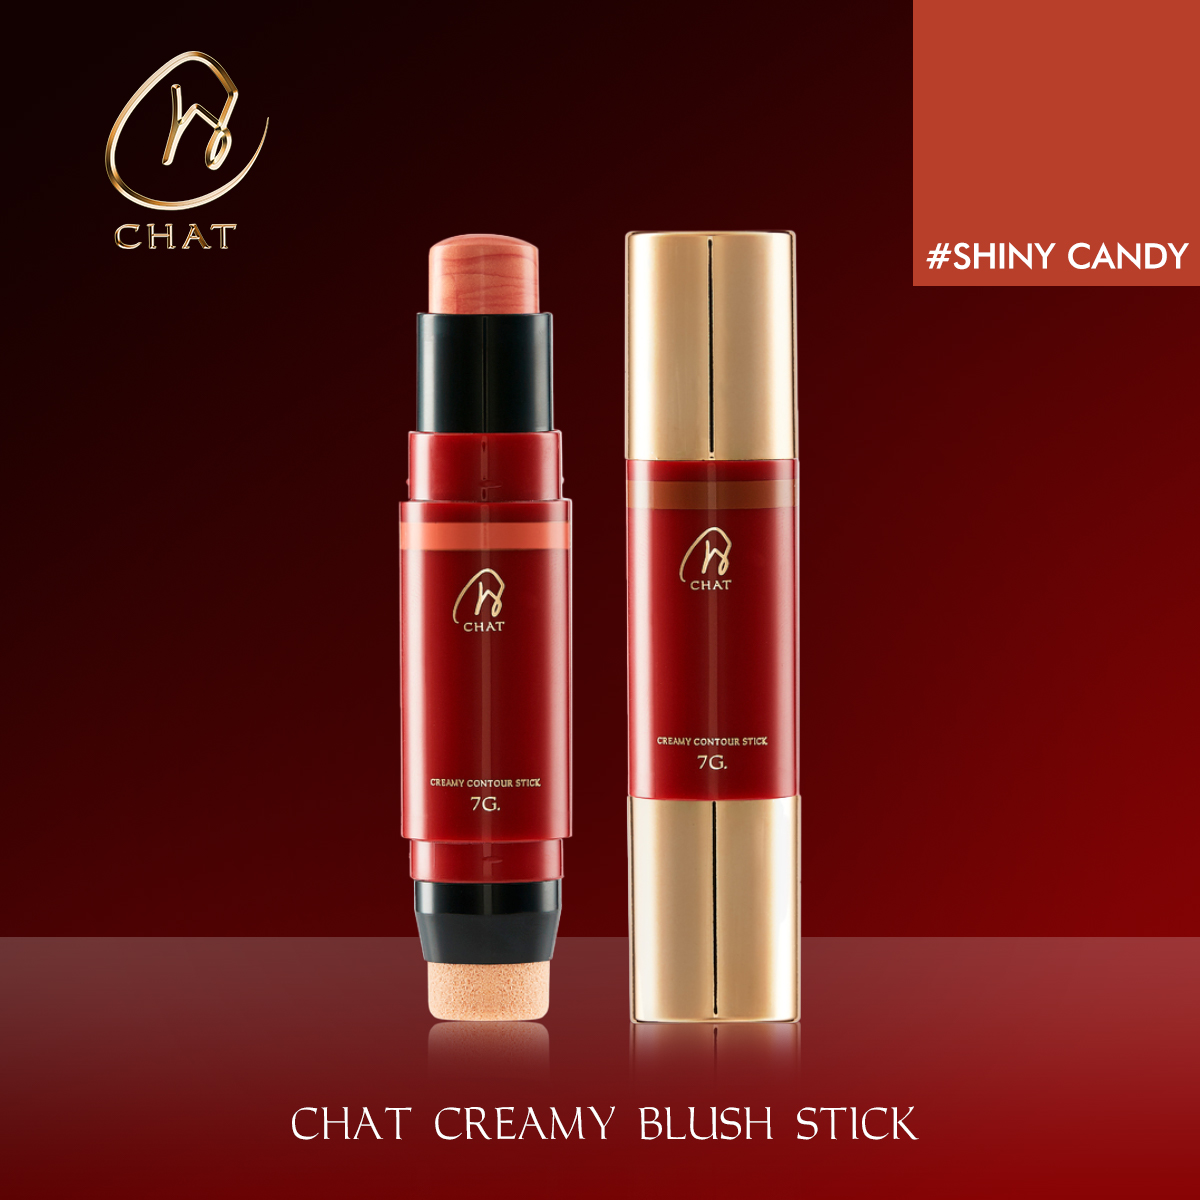 แนะนำ ฉัตร ครีมมี่บลัชสติ๊ก #ชายน์นี่ แคนดี้ CHAT Creamy Blush Stick #Shiny Candy (บลัชออนแบบแท่ง , เครื่องสำอางน้องฉัตร)